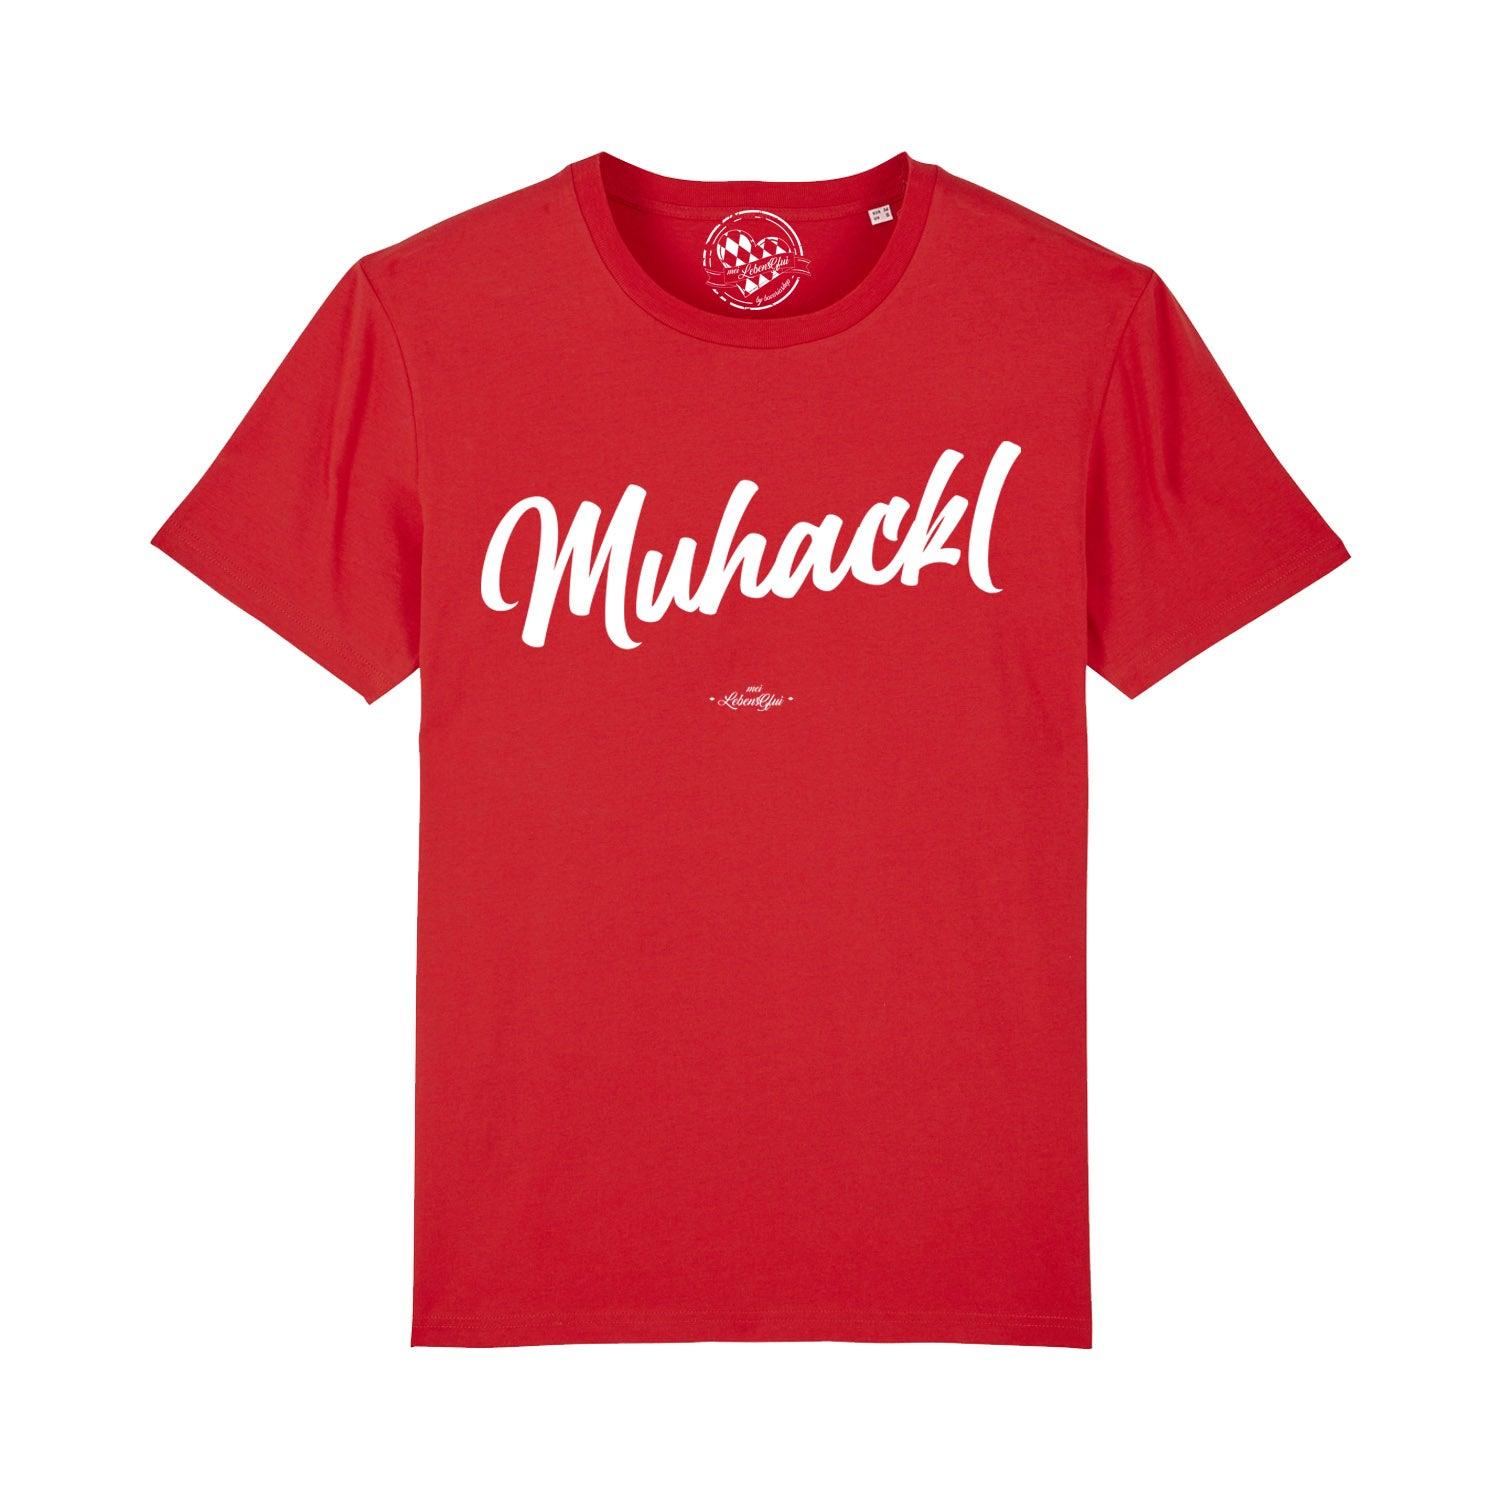 Herren T-Shirt "Muhackl" - bavariashop - mei LebensGfui